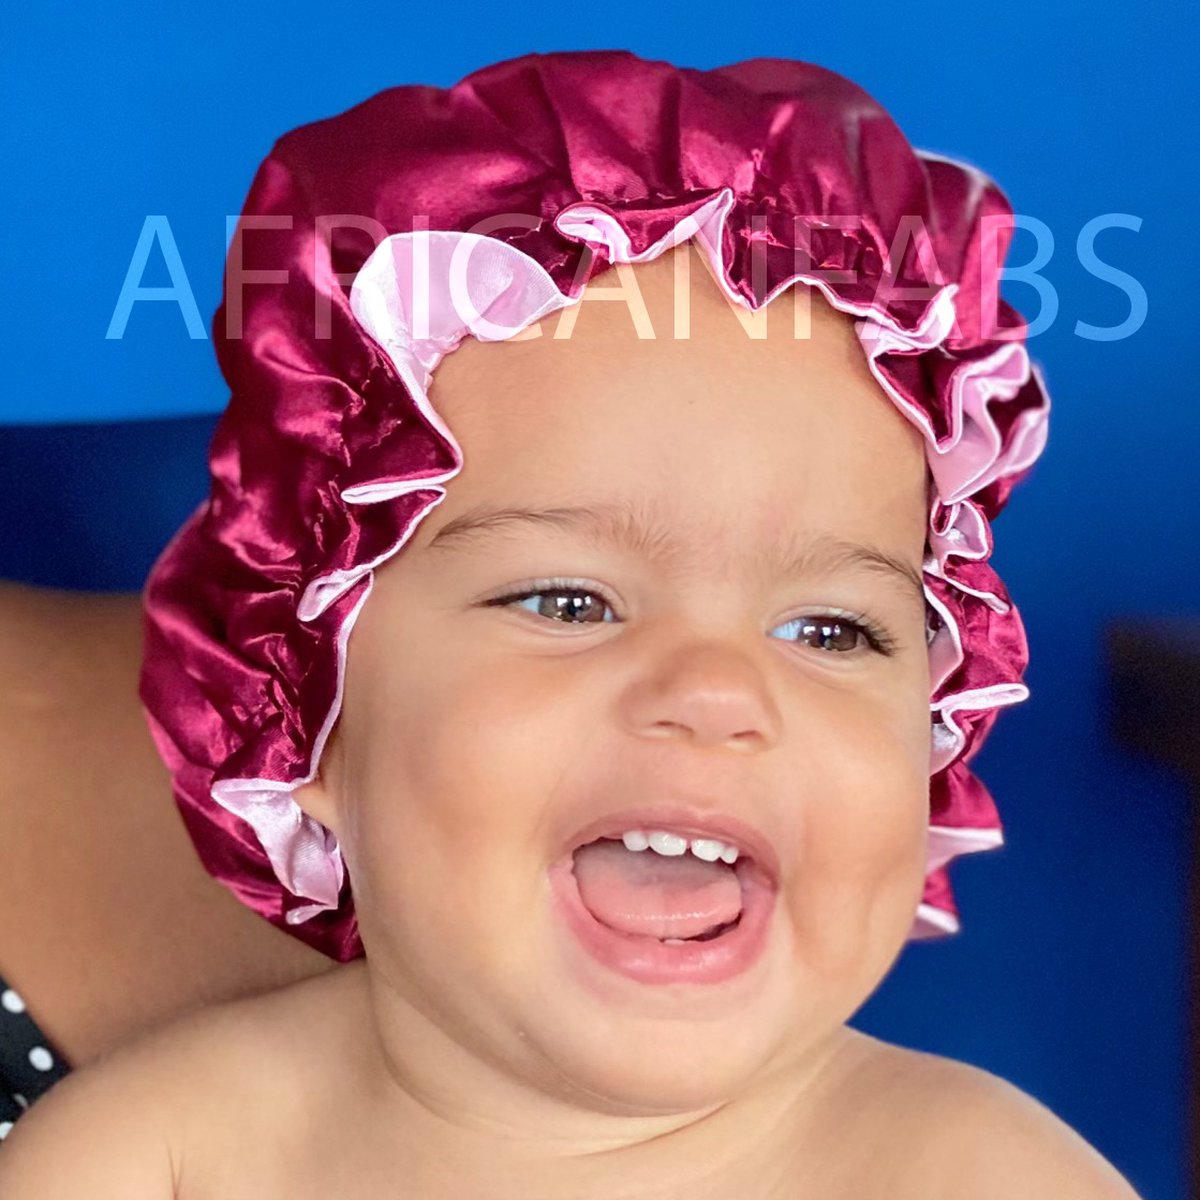 Rode Satijnen Slaapmuts voor Kinderen van 3-7 jaar AfricanFabs® / Kinder Hair Bonnet / Haar bonnet van Satijn / Satin bonnet